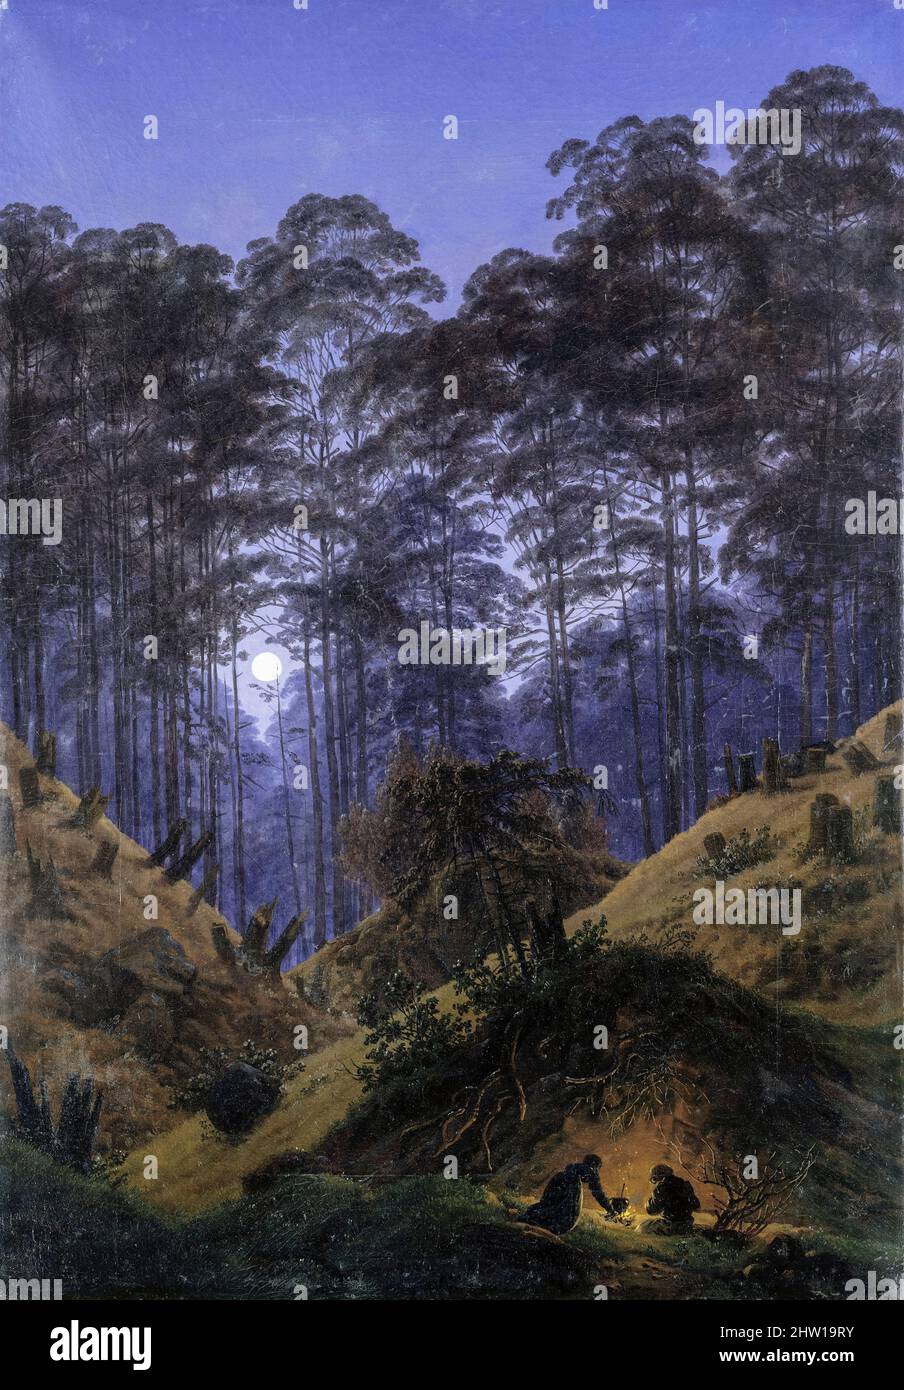 Caspar David Friedrich, Waldinneres bei Mondschein (El interior del bosque a la luz de la luna), pintura de paisaje en óleo sobre lienzo, 1823-1830 Foto de stock